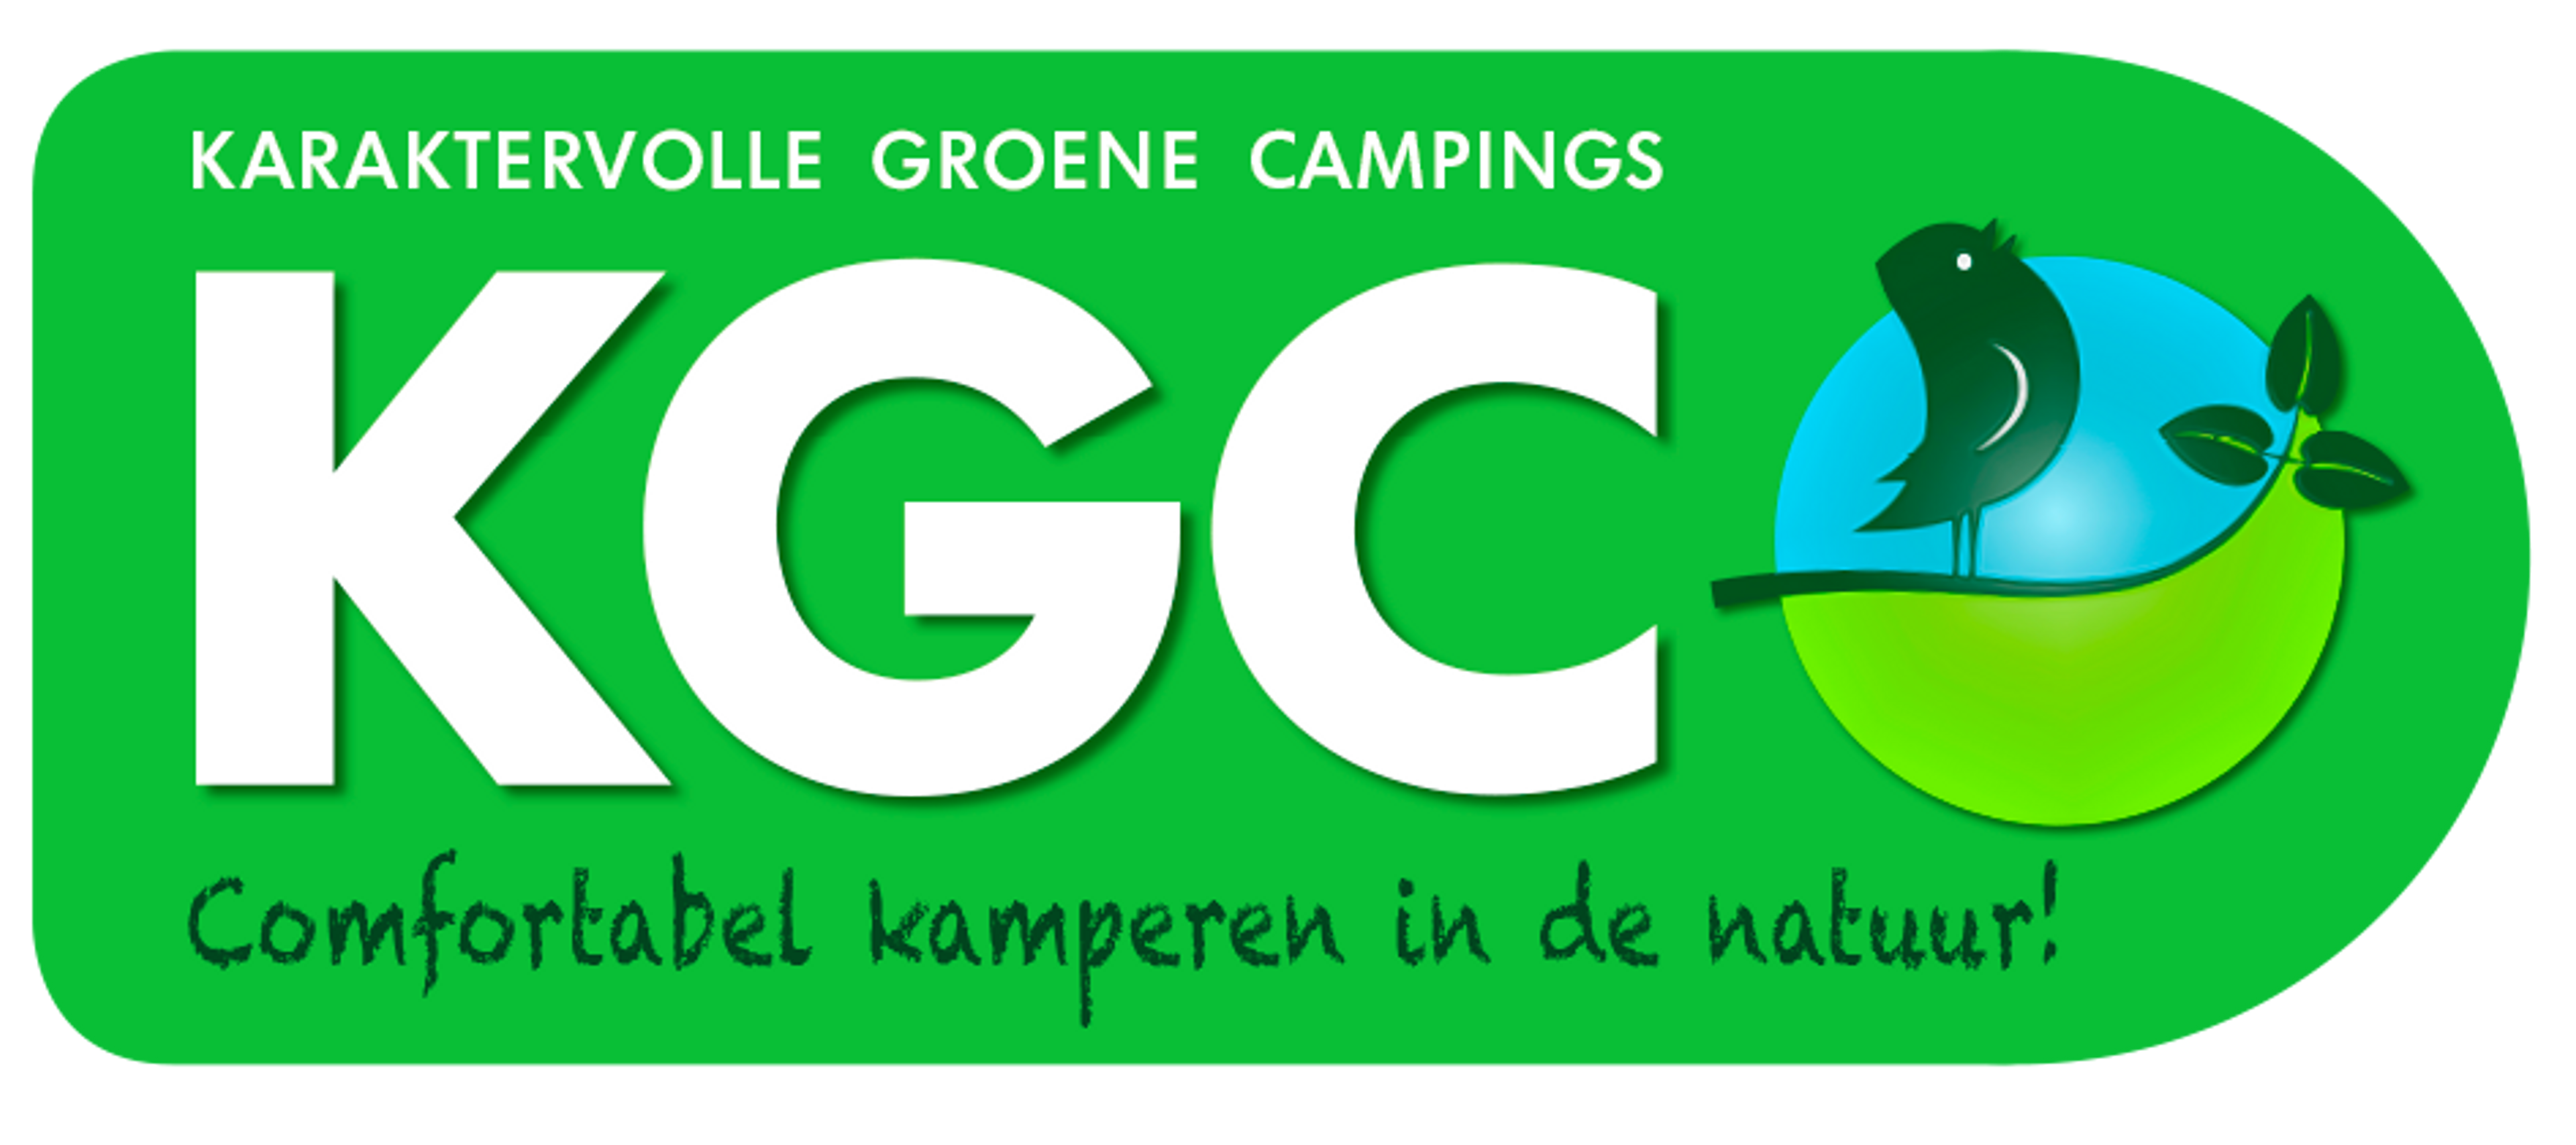 Informatie over de karaktervolle groene campings